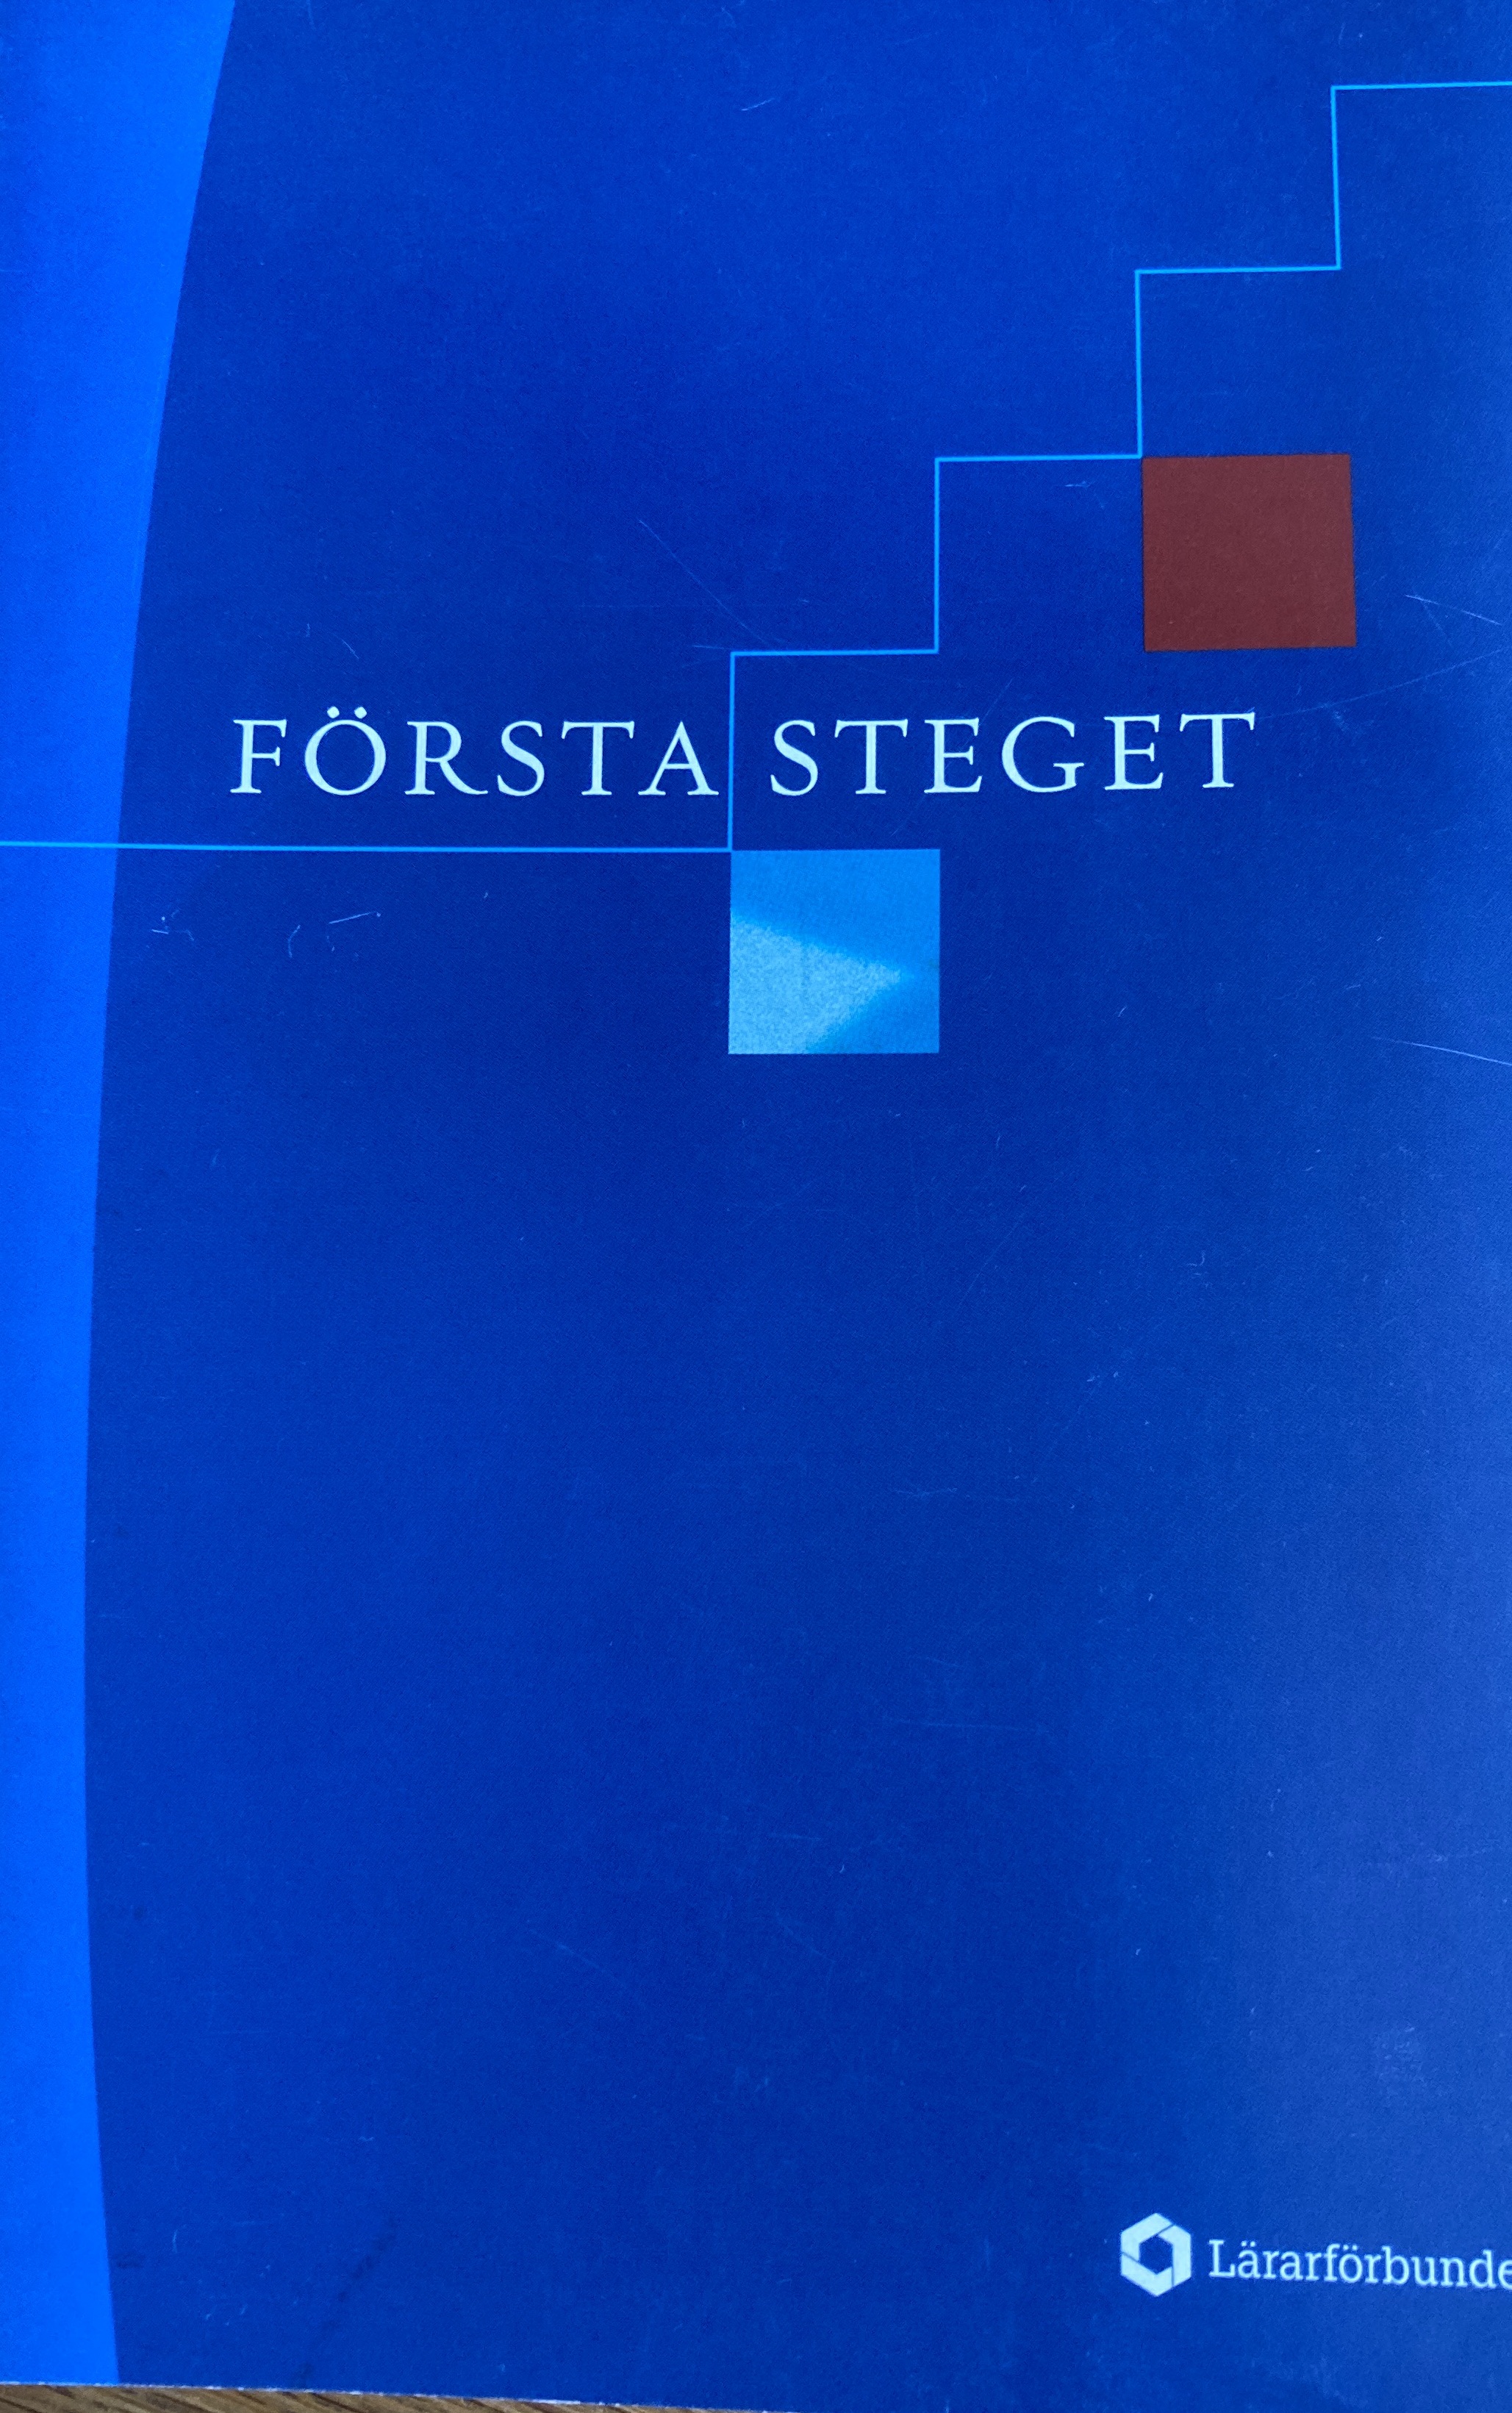 Första steget; Lärarförbundet, Sveriges lärarförbund
(tidigare namn), Sveriges lärarförbund, Svenska facklärarförbundet
(tidigare namn), Svenska facklärarförbundet, Sveriges lärare; 2004